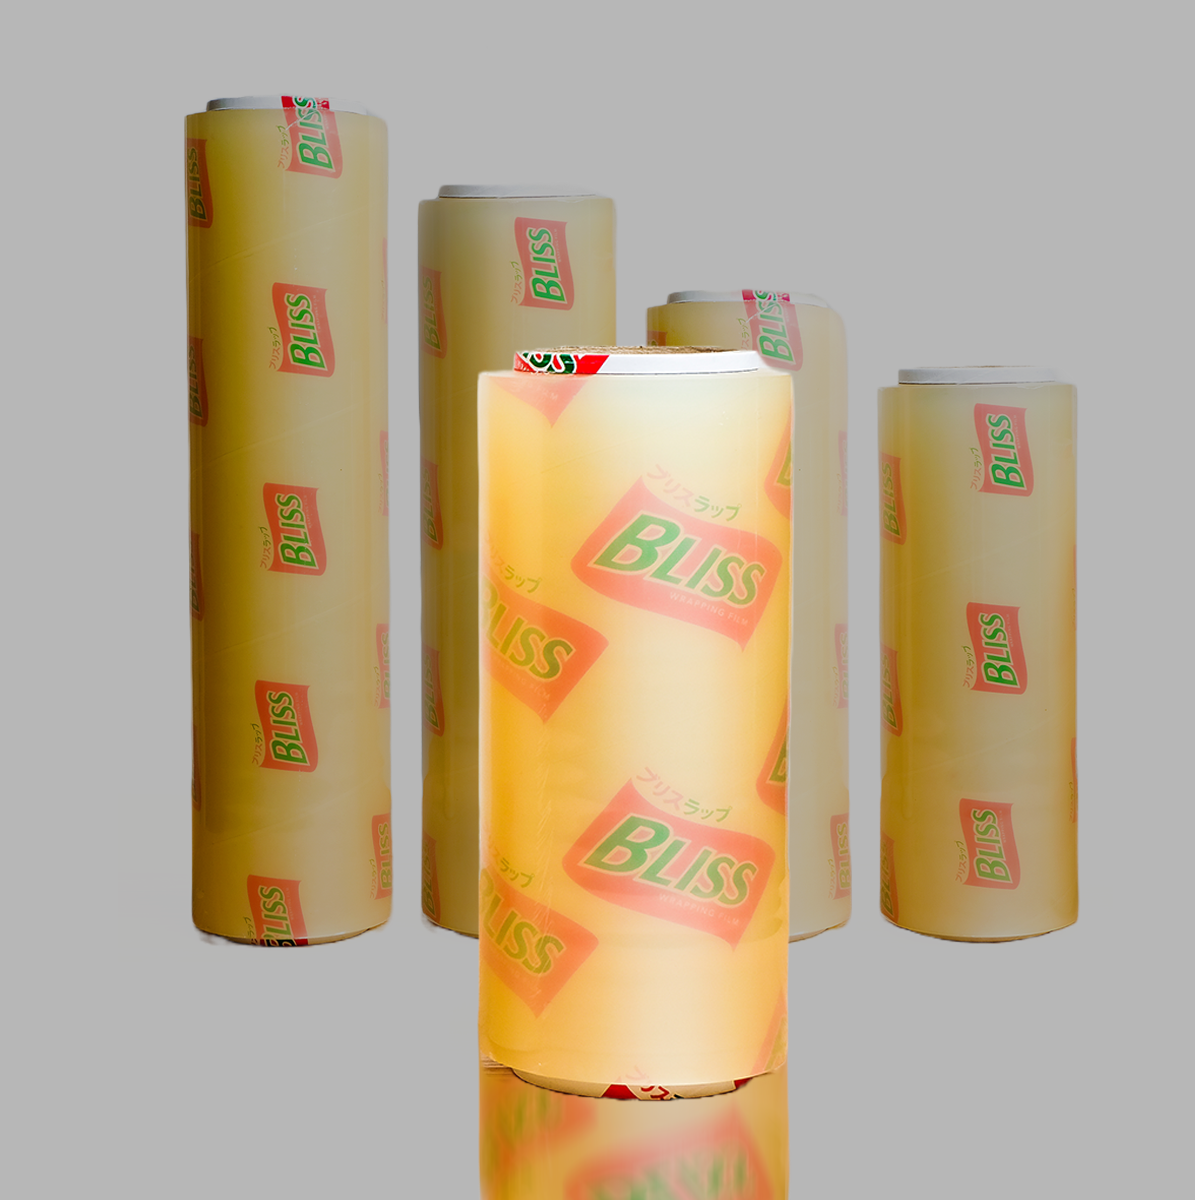 Bliss PVC Cling Wrap Plastik ukuran lebar 25cm. plastik pvc cling wrap terbaik lebih dari best fresh, total, raypin bermerk bliss